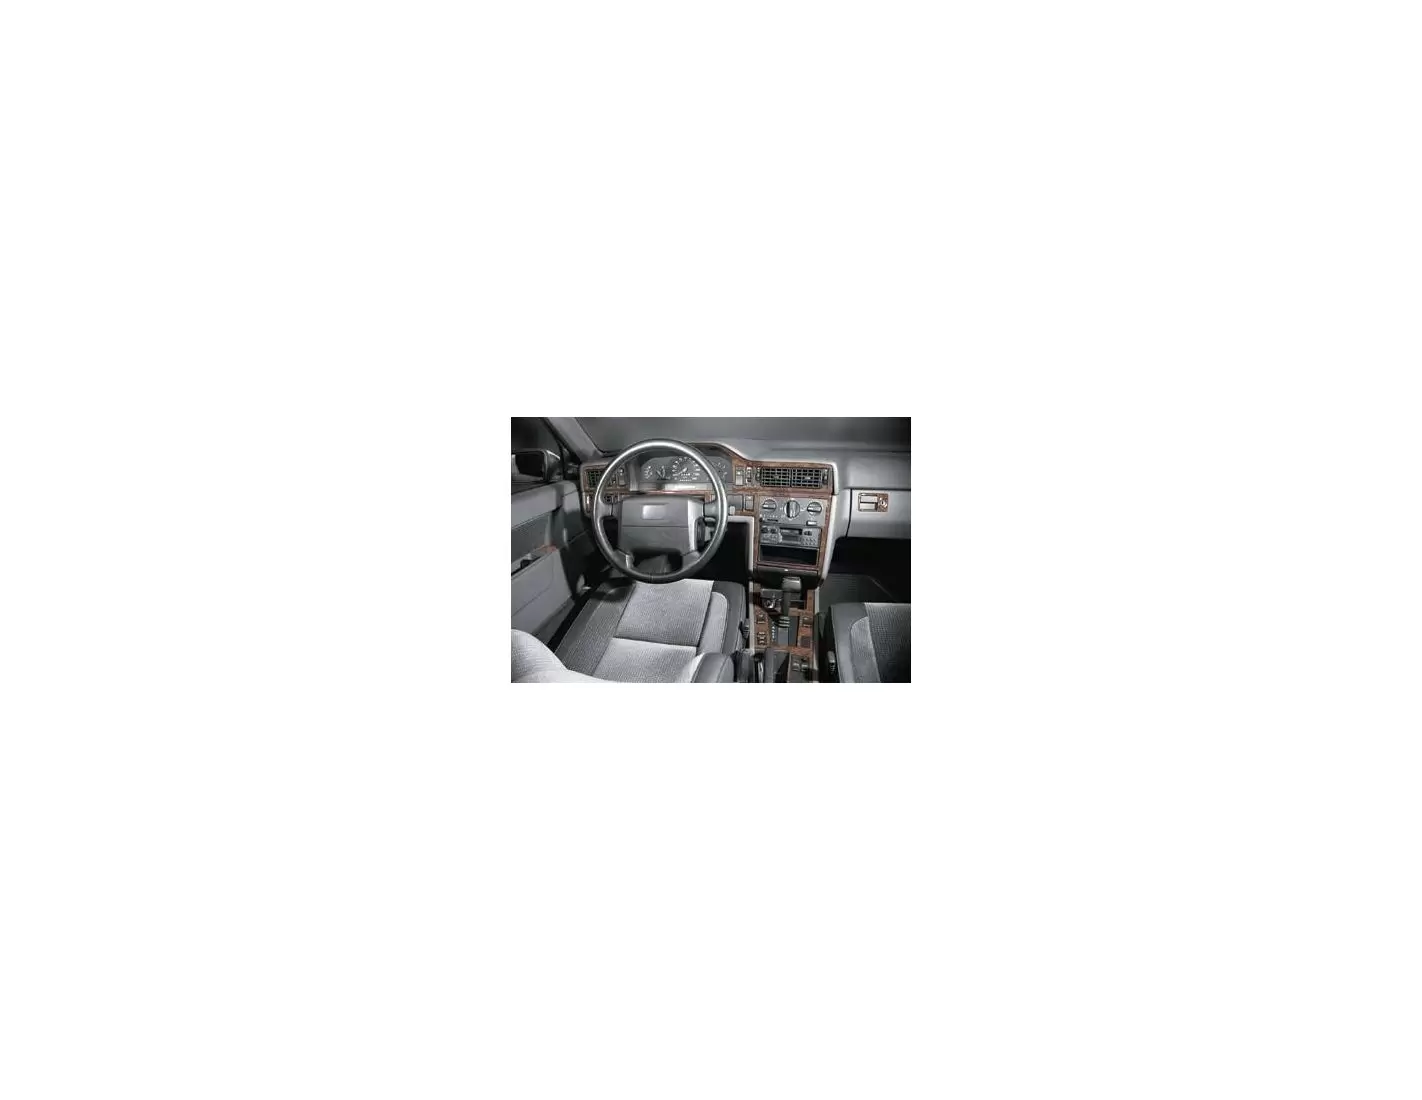 Volvo 850 09.93 - 02.97 Kit Rivestimento Cruscotto all'interno del veicolo Cruscotti personalizzati 21-Decori